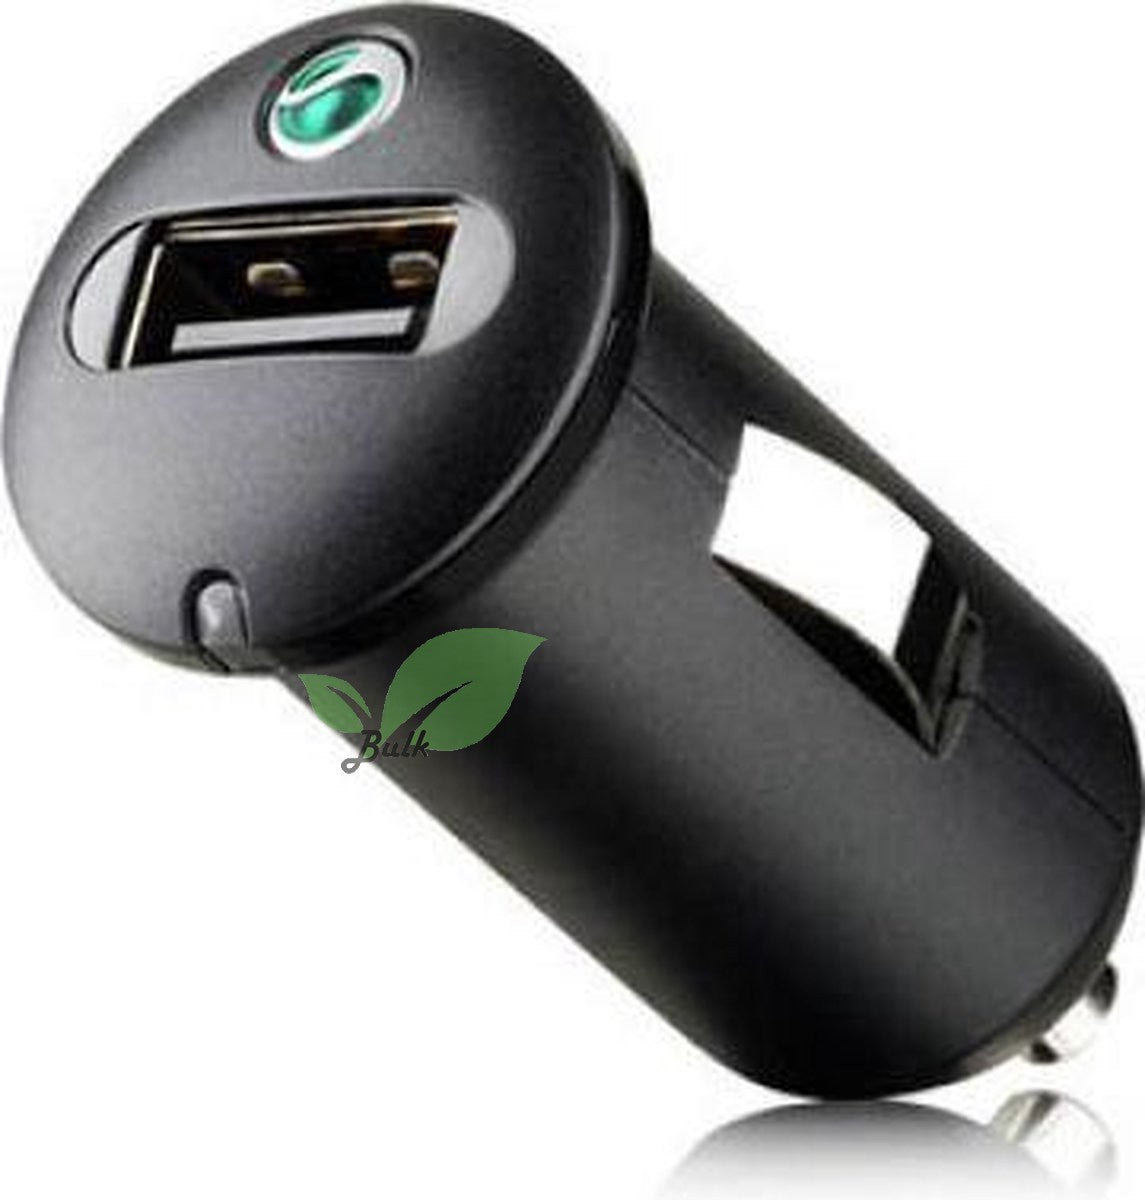 Sony Ericsson USB Car Charger 1.2A Bulk